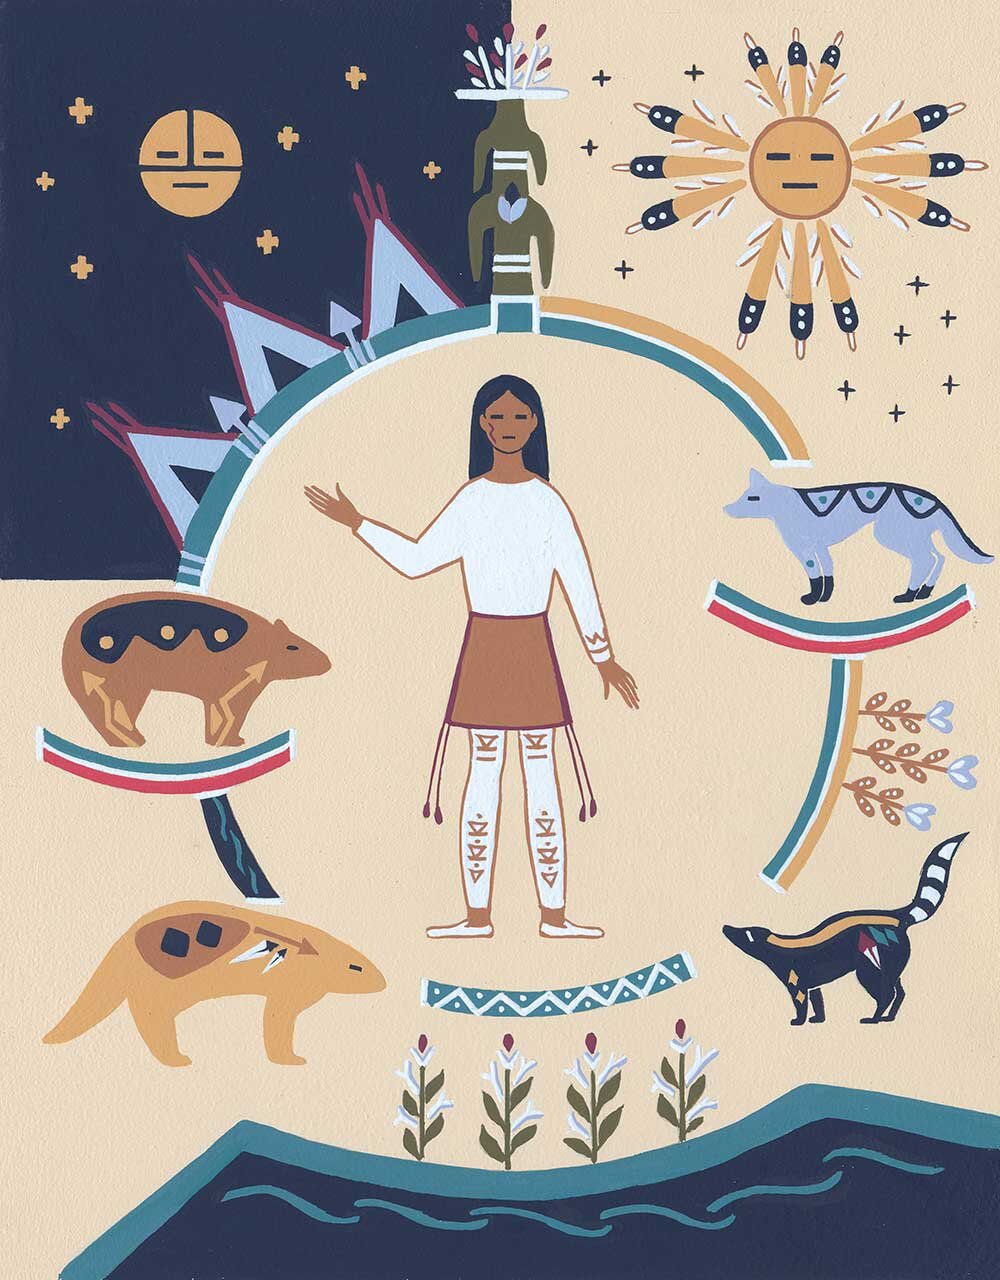 Poia-Native-American-folktale-2016-2.jpg